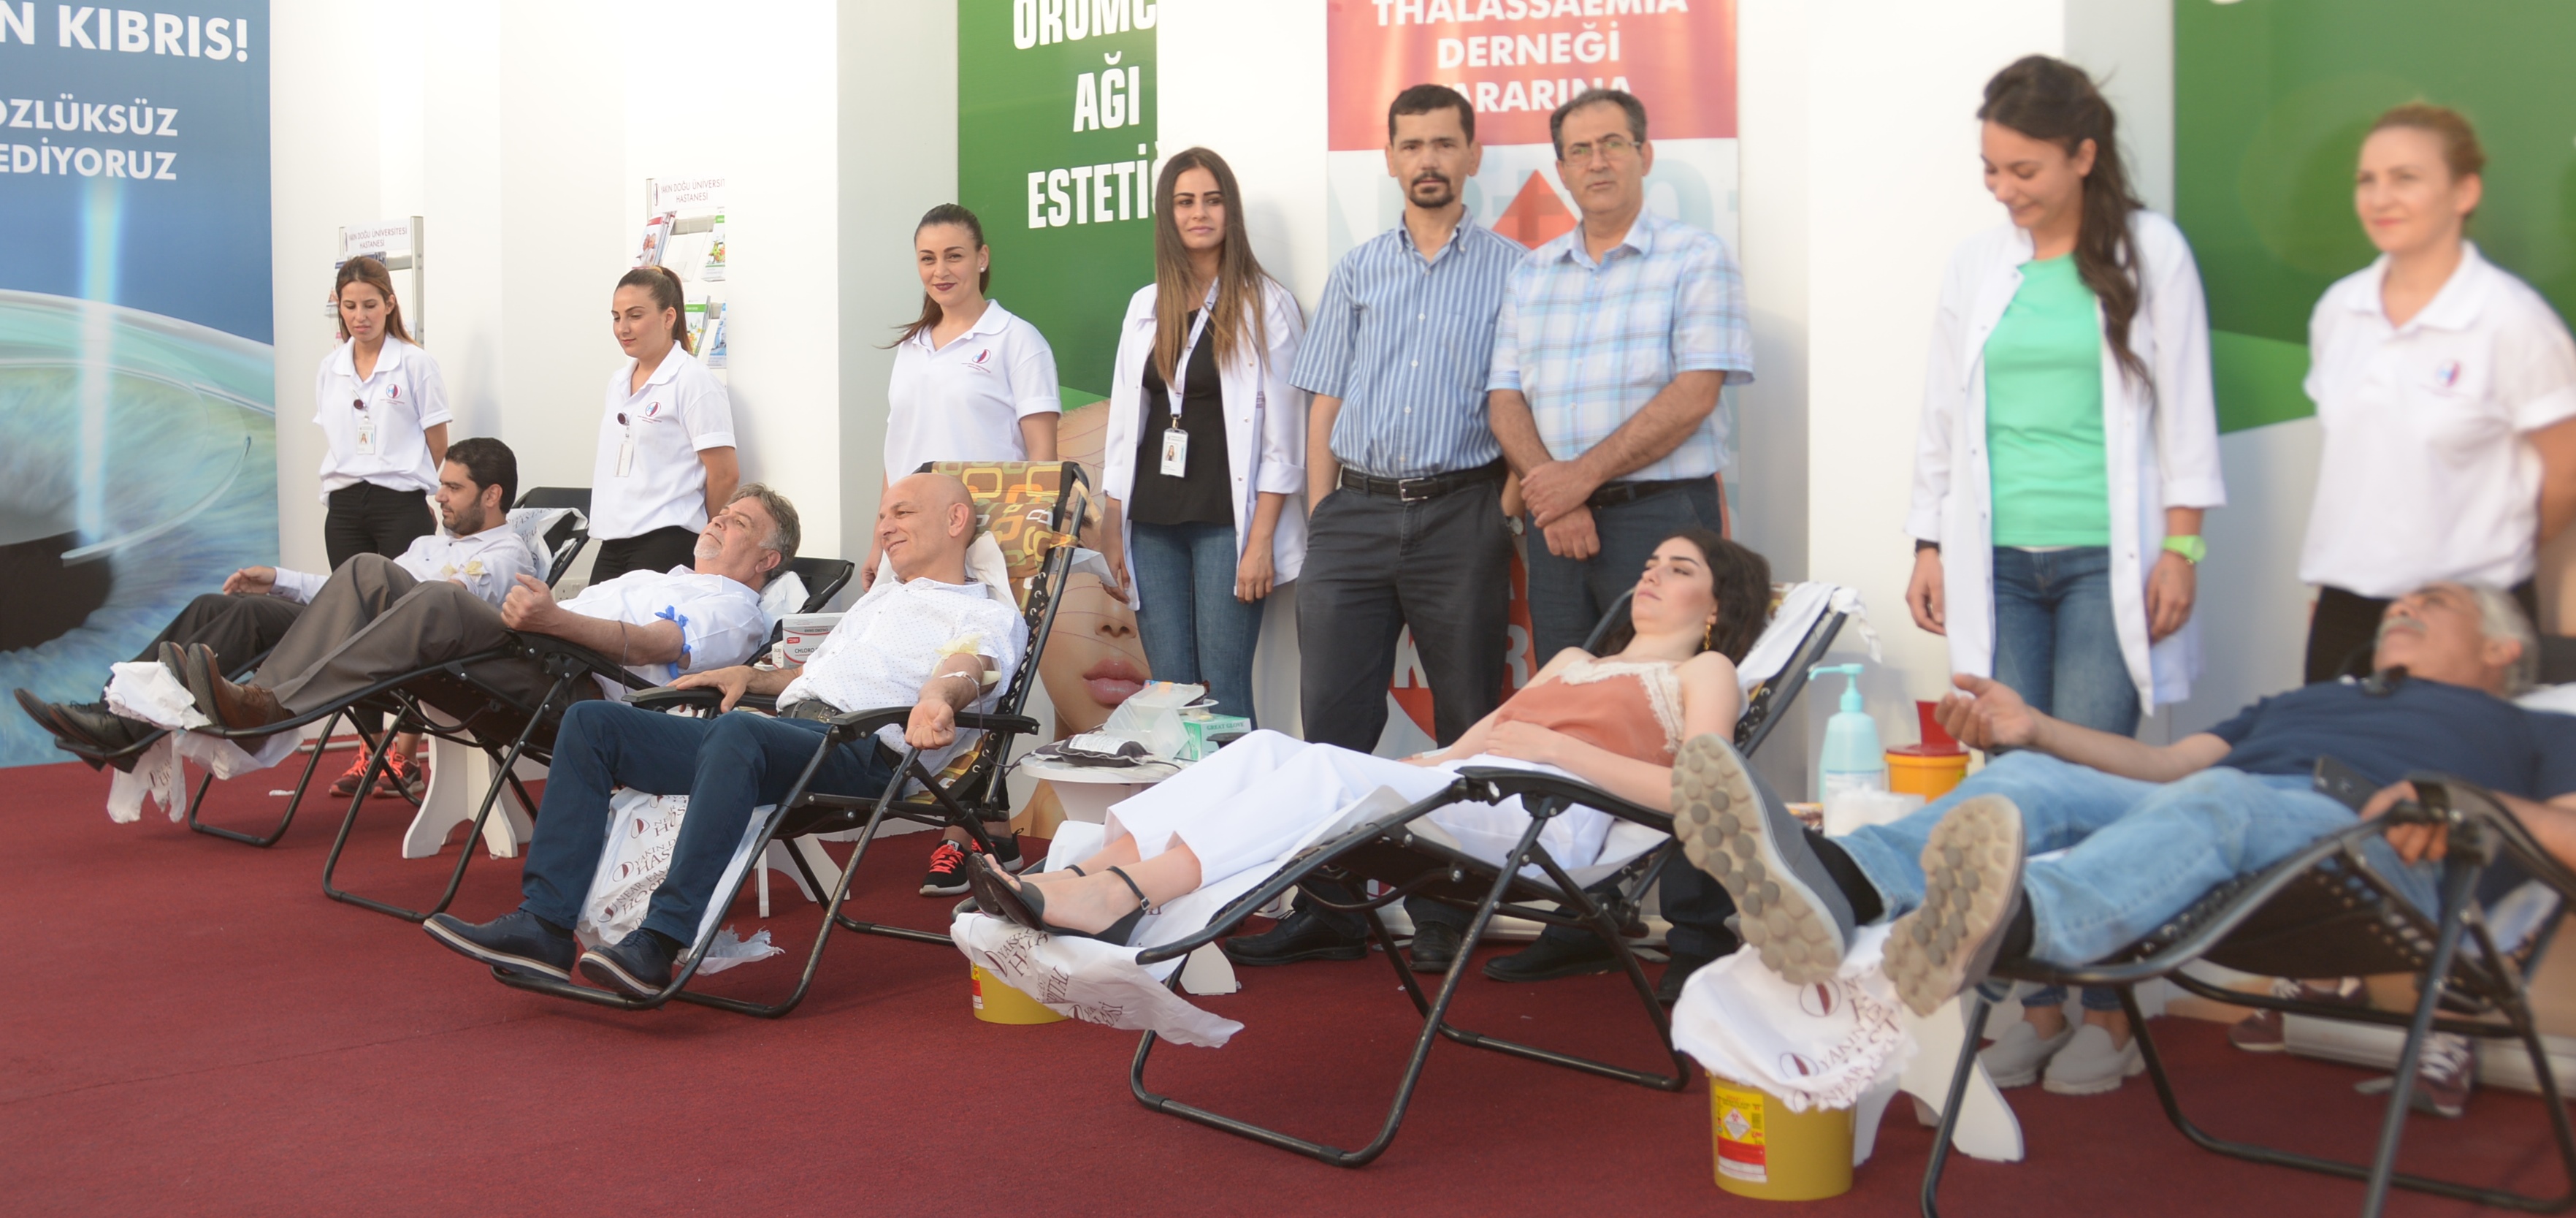 Yakın Doğu Üniversitesi Hastanesi Fuar Alanında Kan Bağışı, Can Bağışı Kampanyası Başlattı